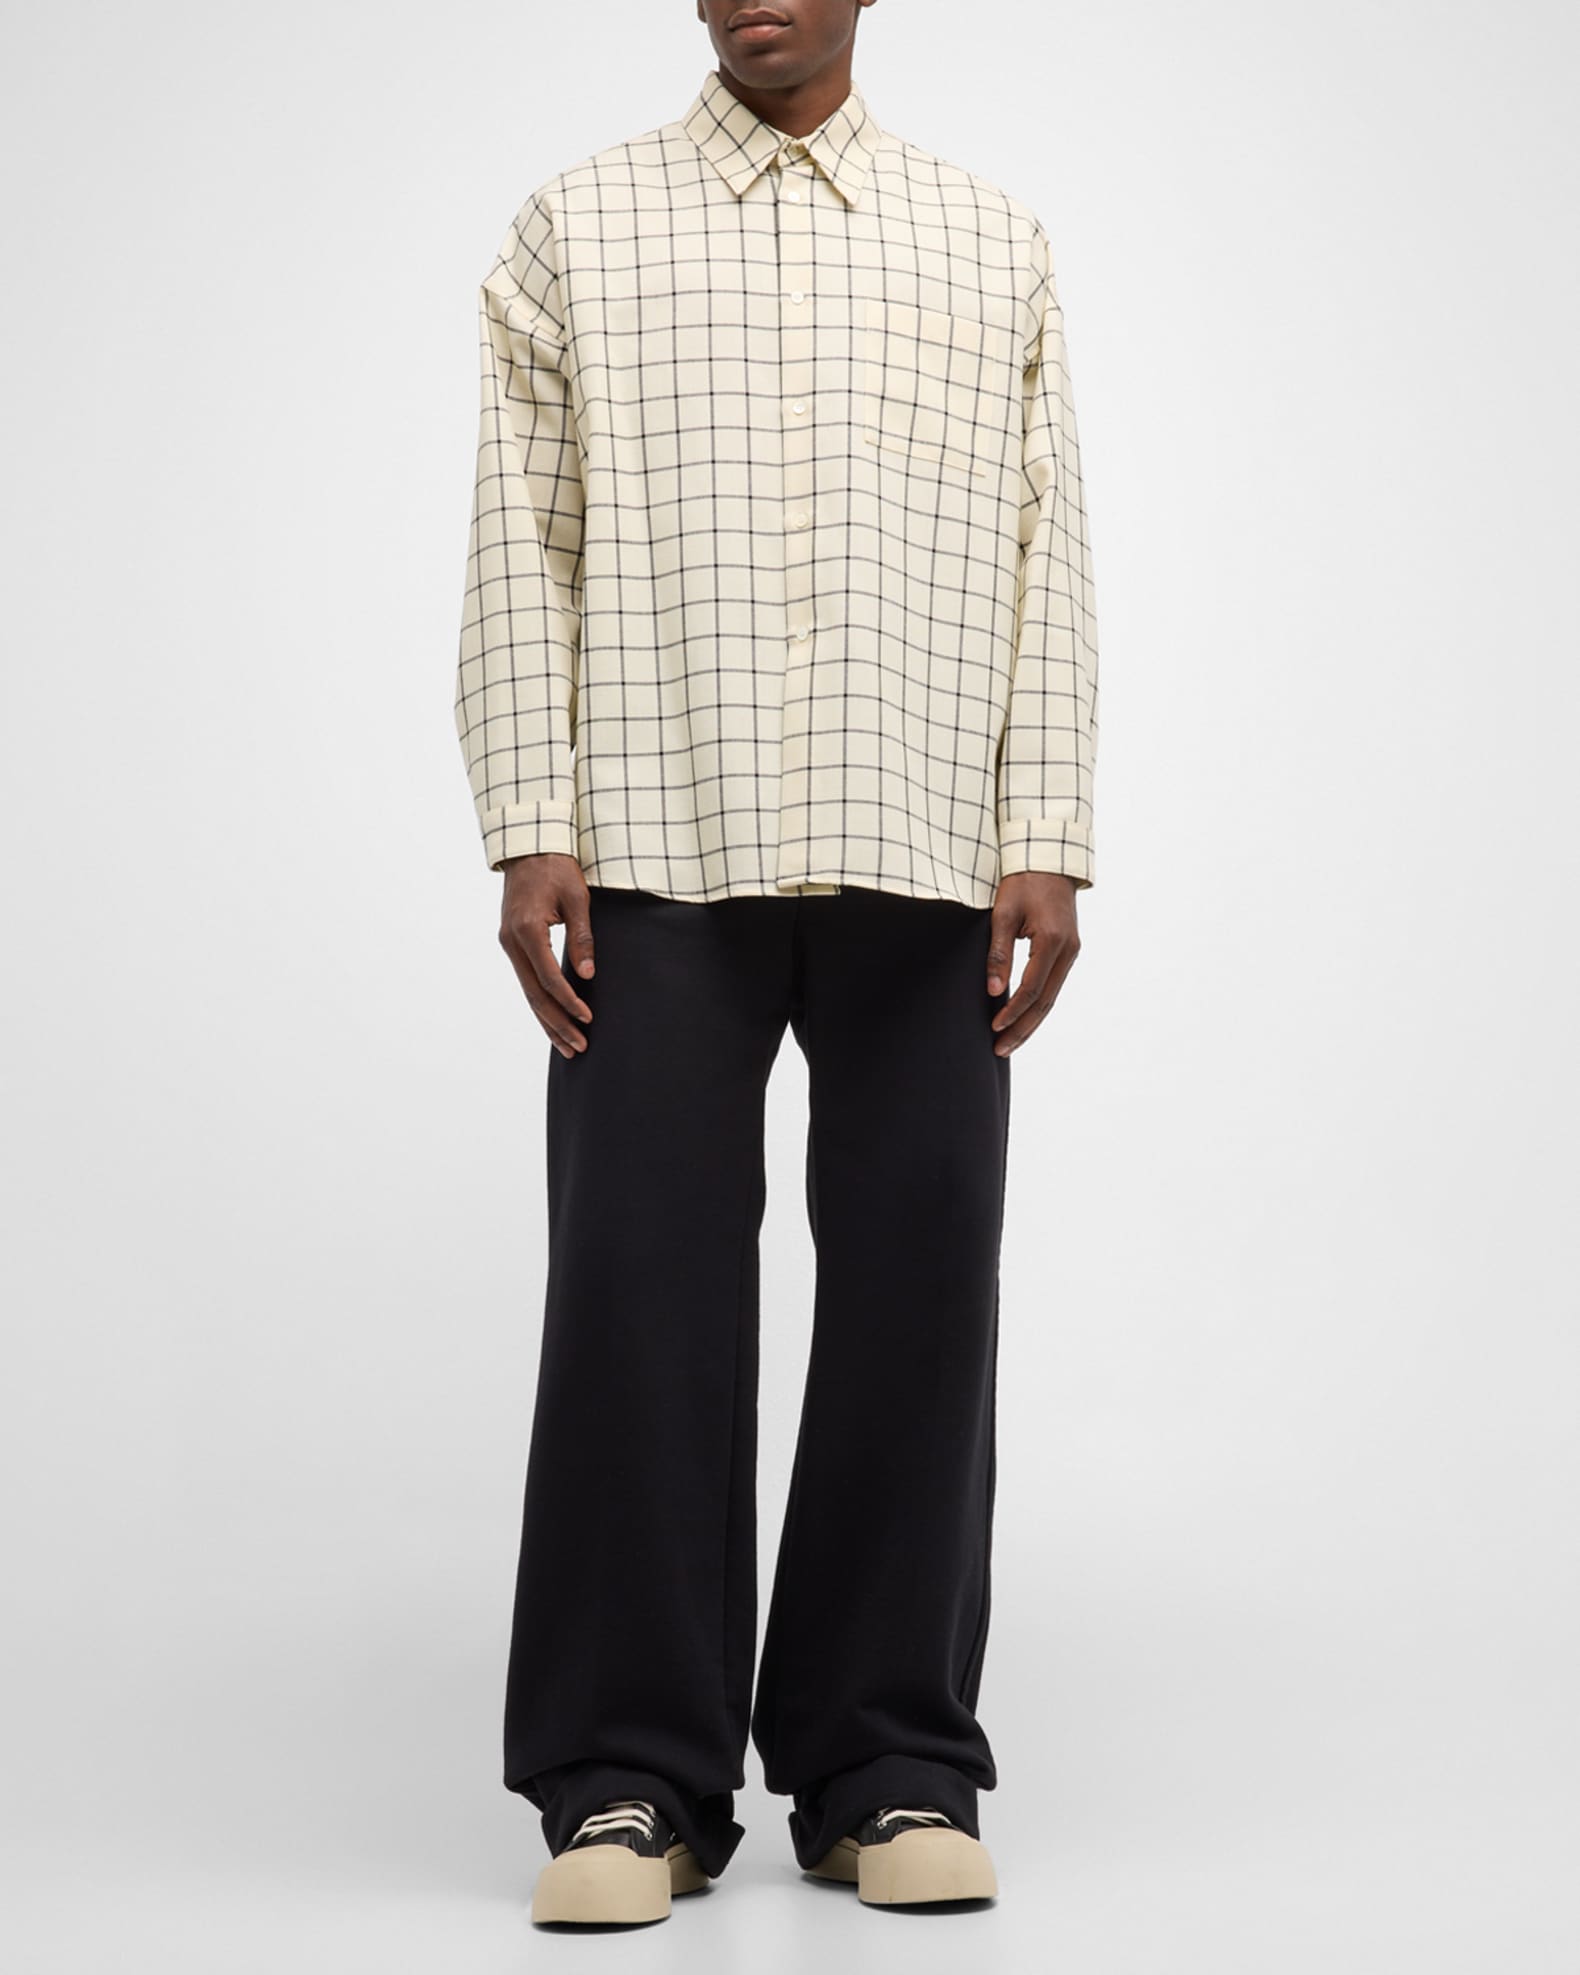 Marni Men's Wool Windowpane Sport Shirt | Neiman Marcus